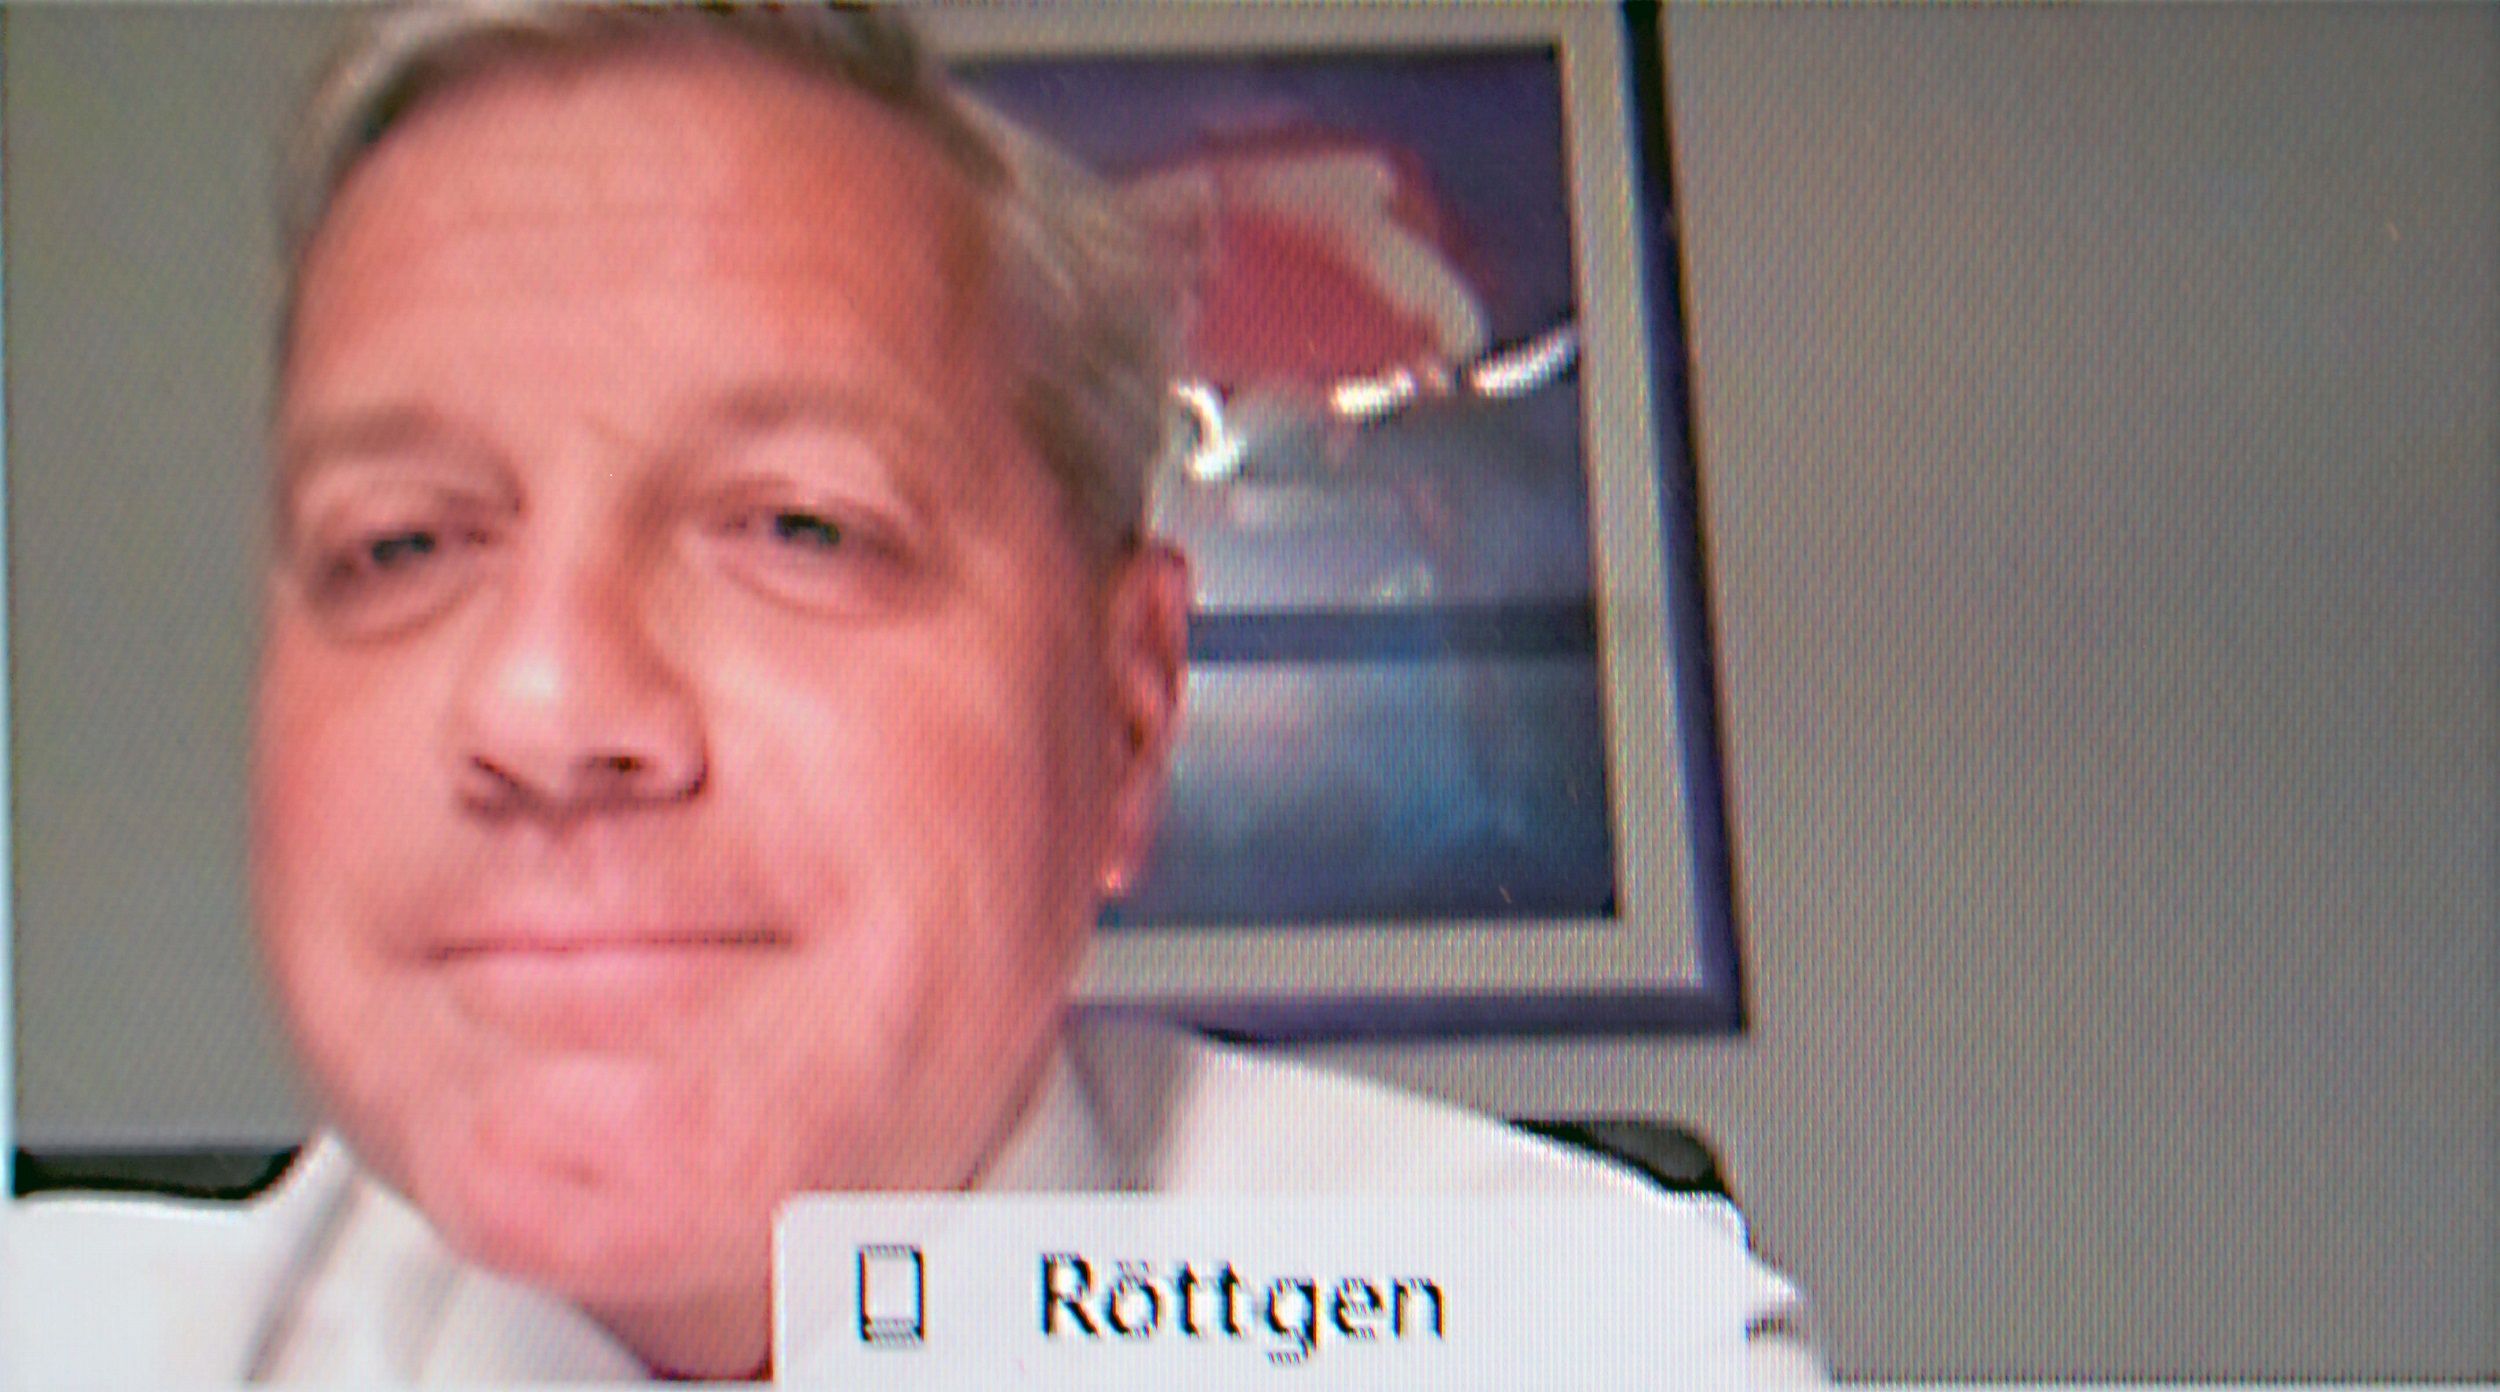 Setzt auf ehrliche Worte: Norbert Röttgen im Austausch per Video mit regionalen CDU-Mitgliedern. Foto: Tzimurtas